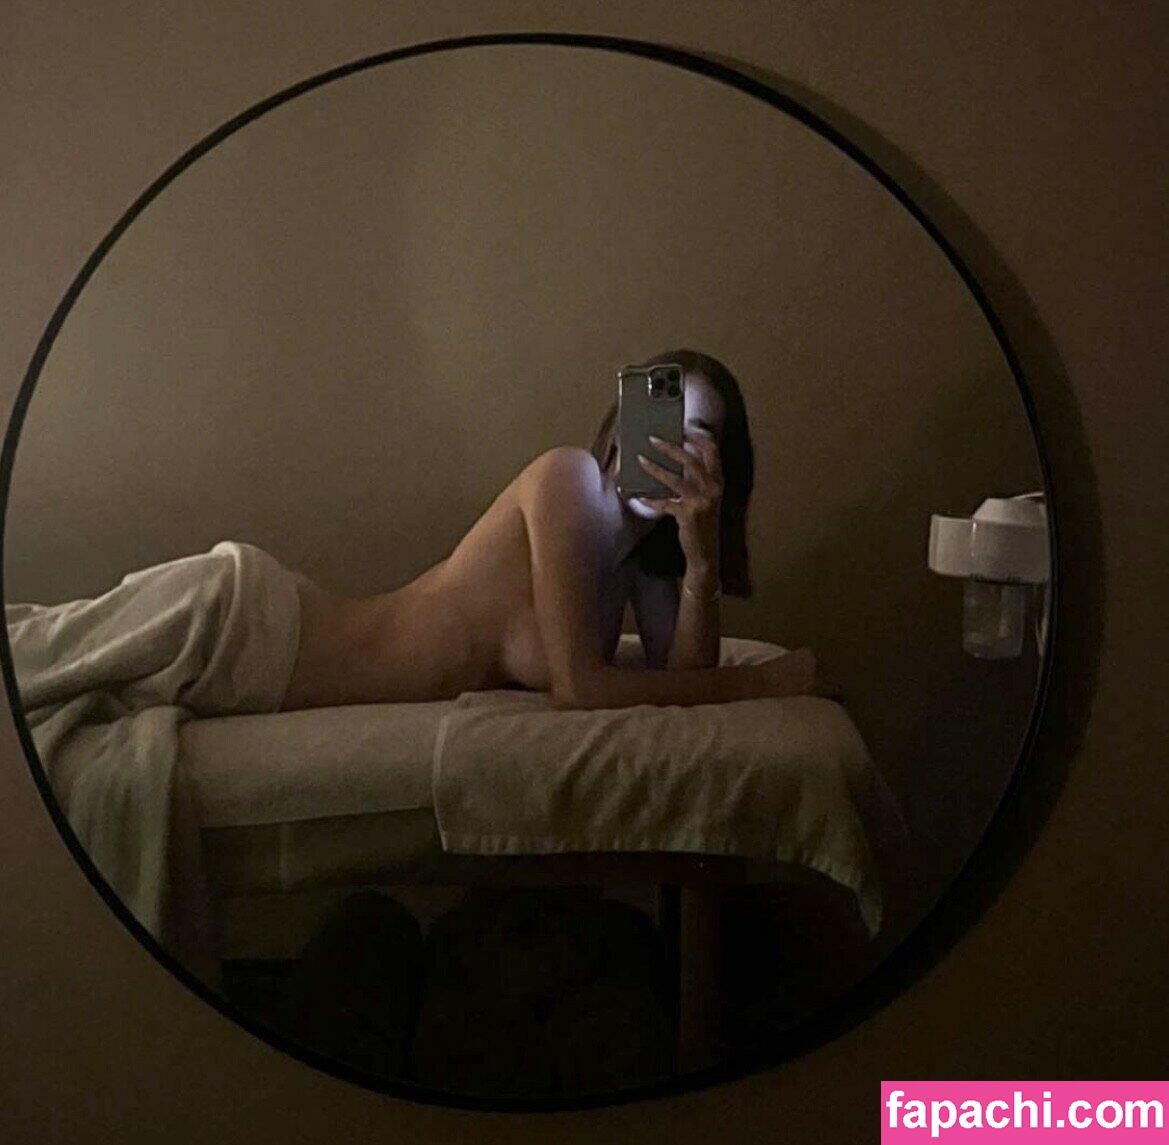 Ginevra Mavilla / ginevramavilla leaked nude photo #0005 from OnlyFans/Patreon